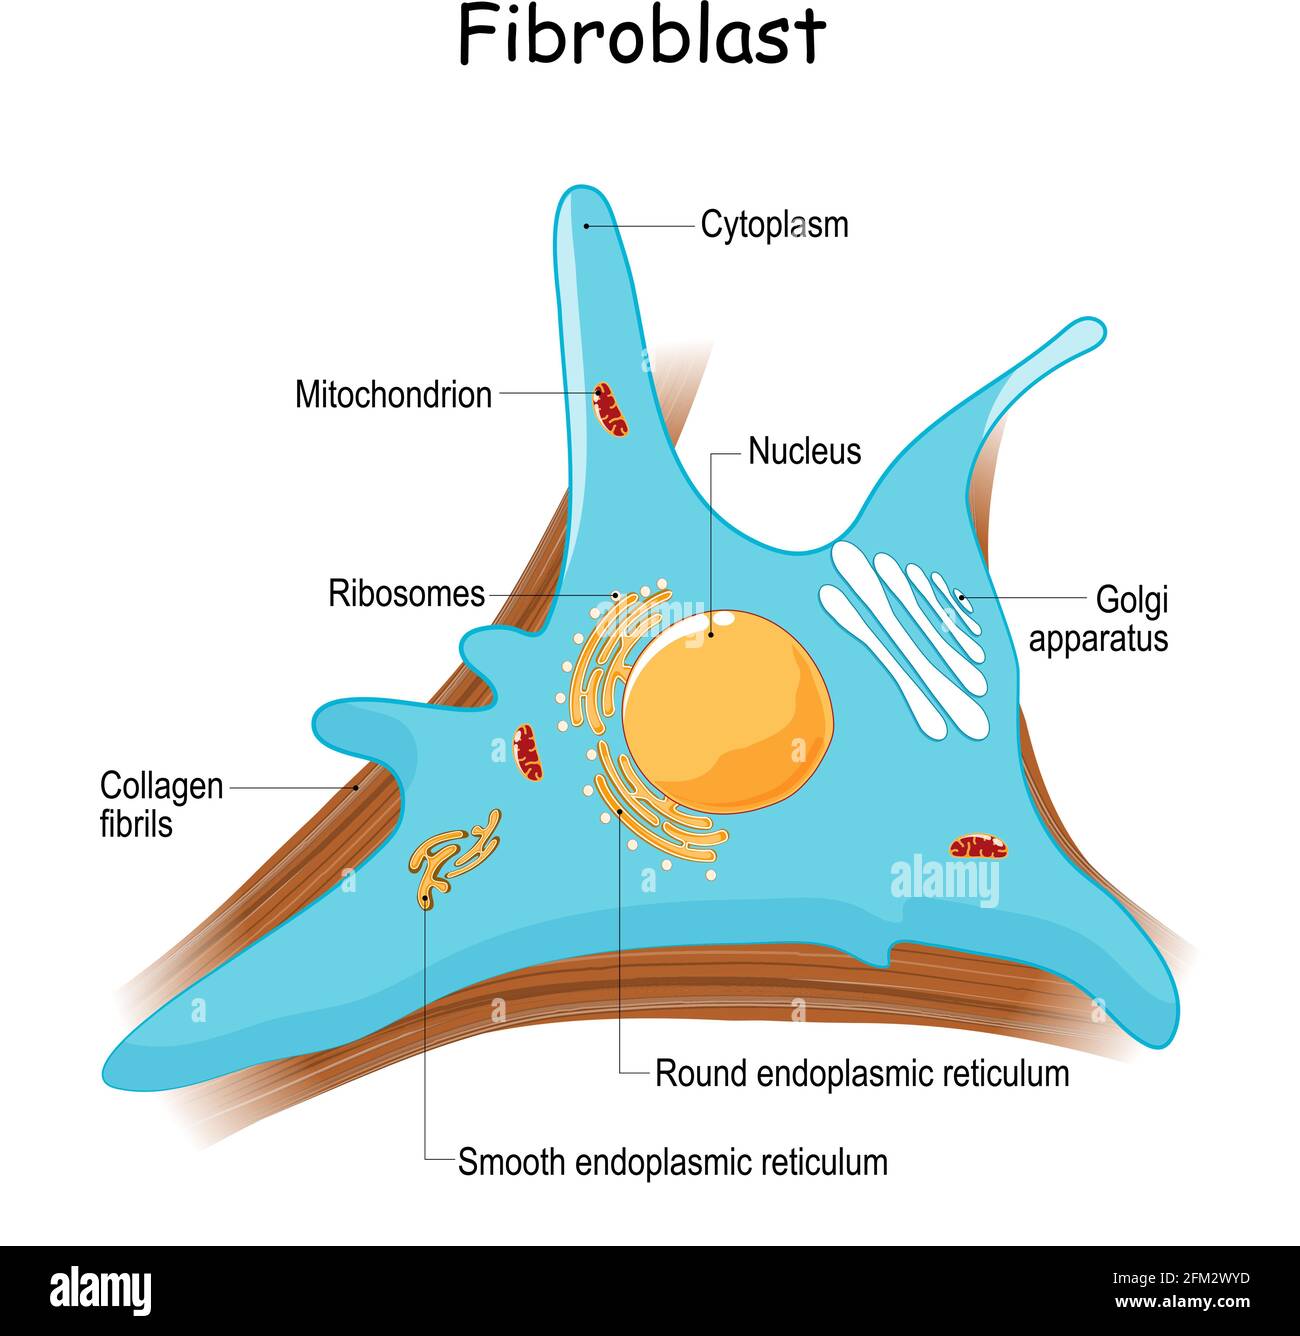 Fibroblasten-Anatomie. Nahaufnahme mit Kollagenfibrillen und Organellen. Diagramm mit golgi-Apparat, Zellkern, Mitochondrien und Ribosomen. vektor Stock Vektor